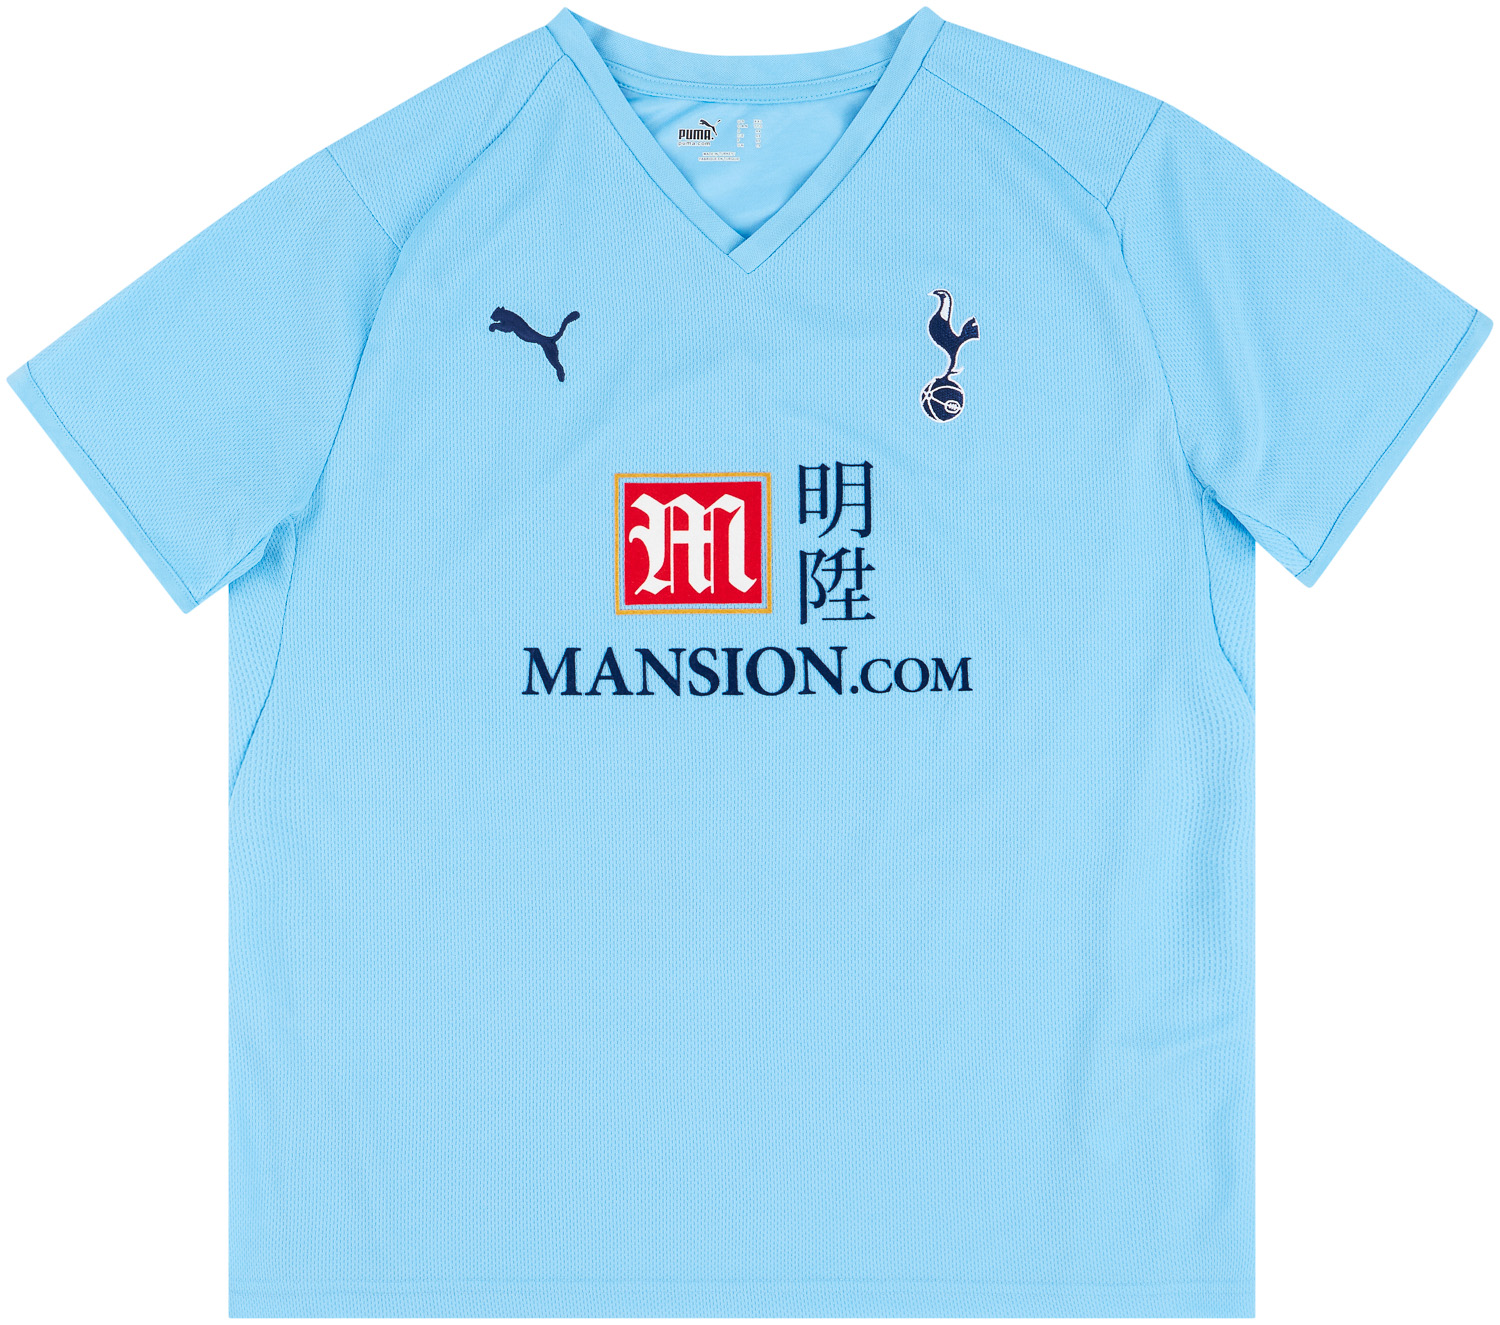 2008-09 Tottenham Hotspur Away Shirt Women's ()